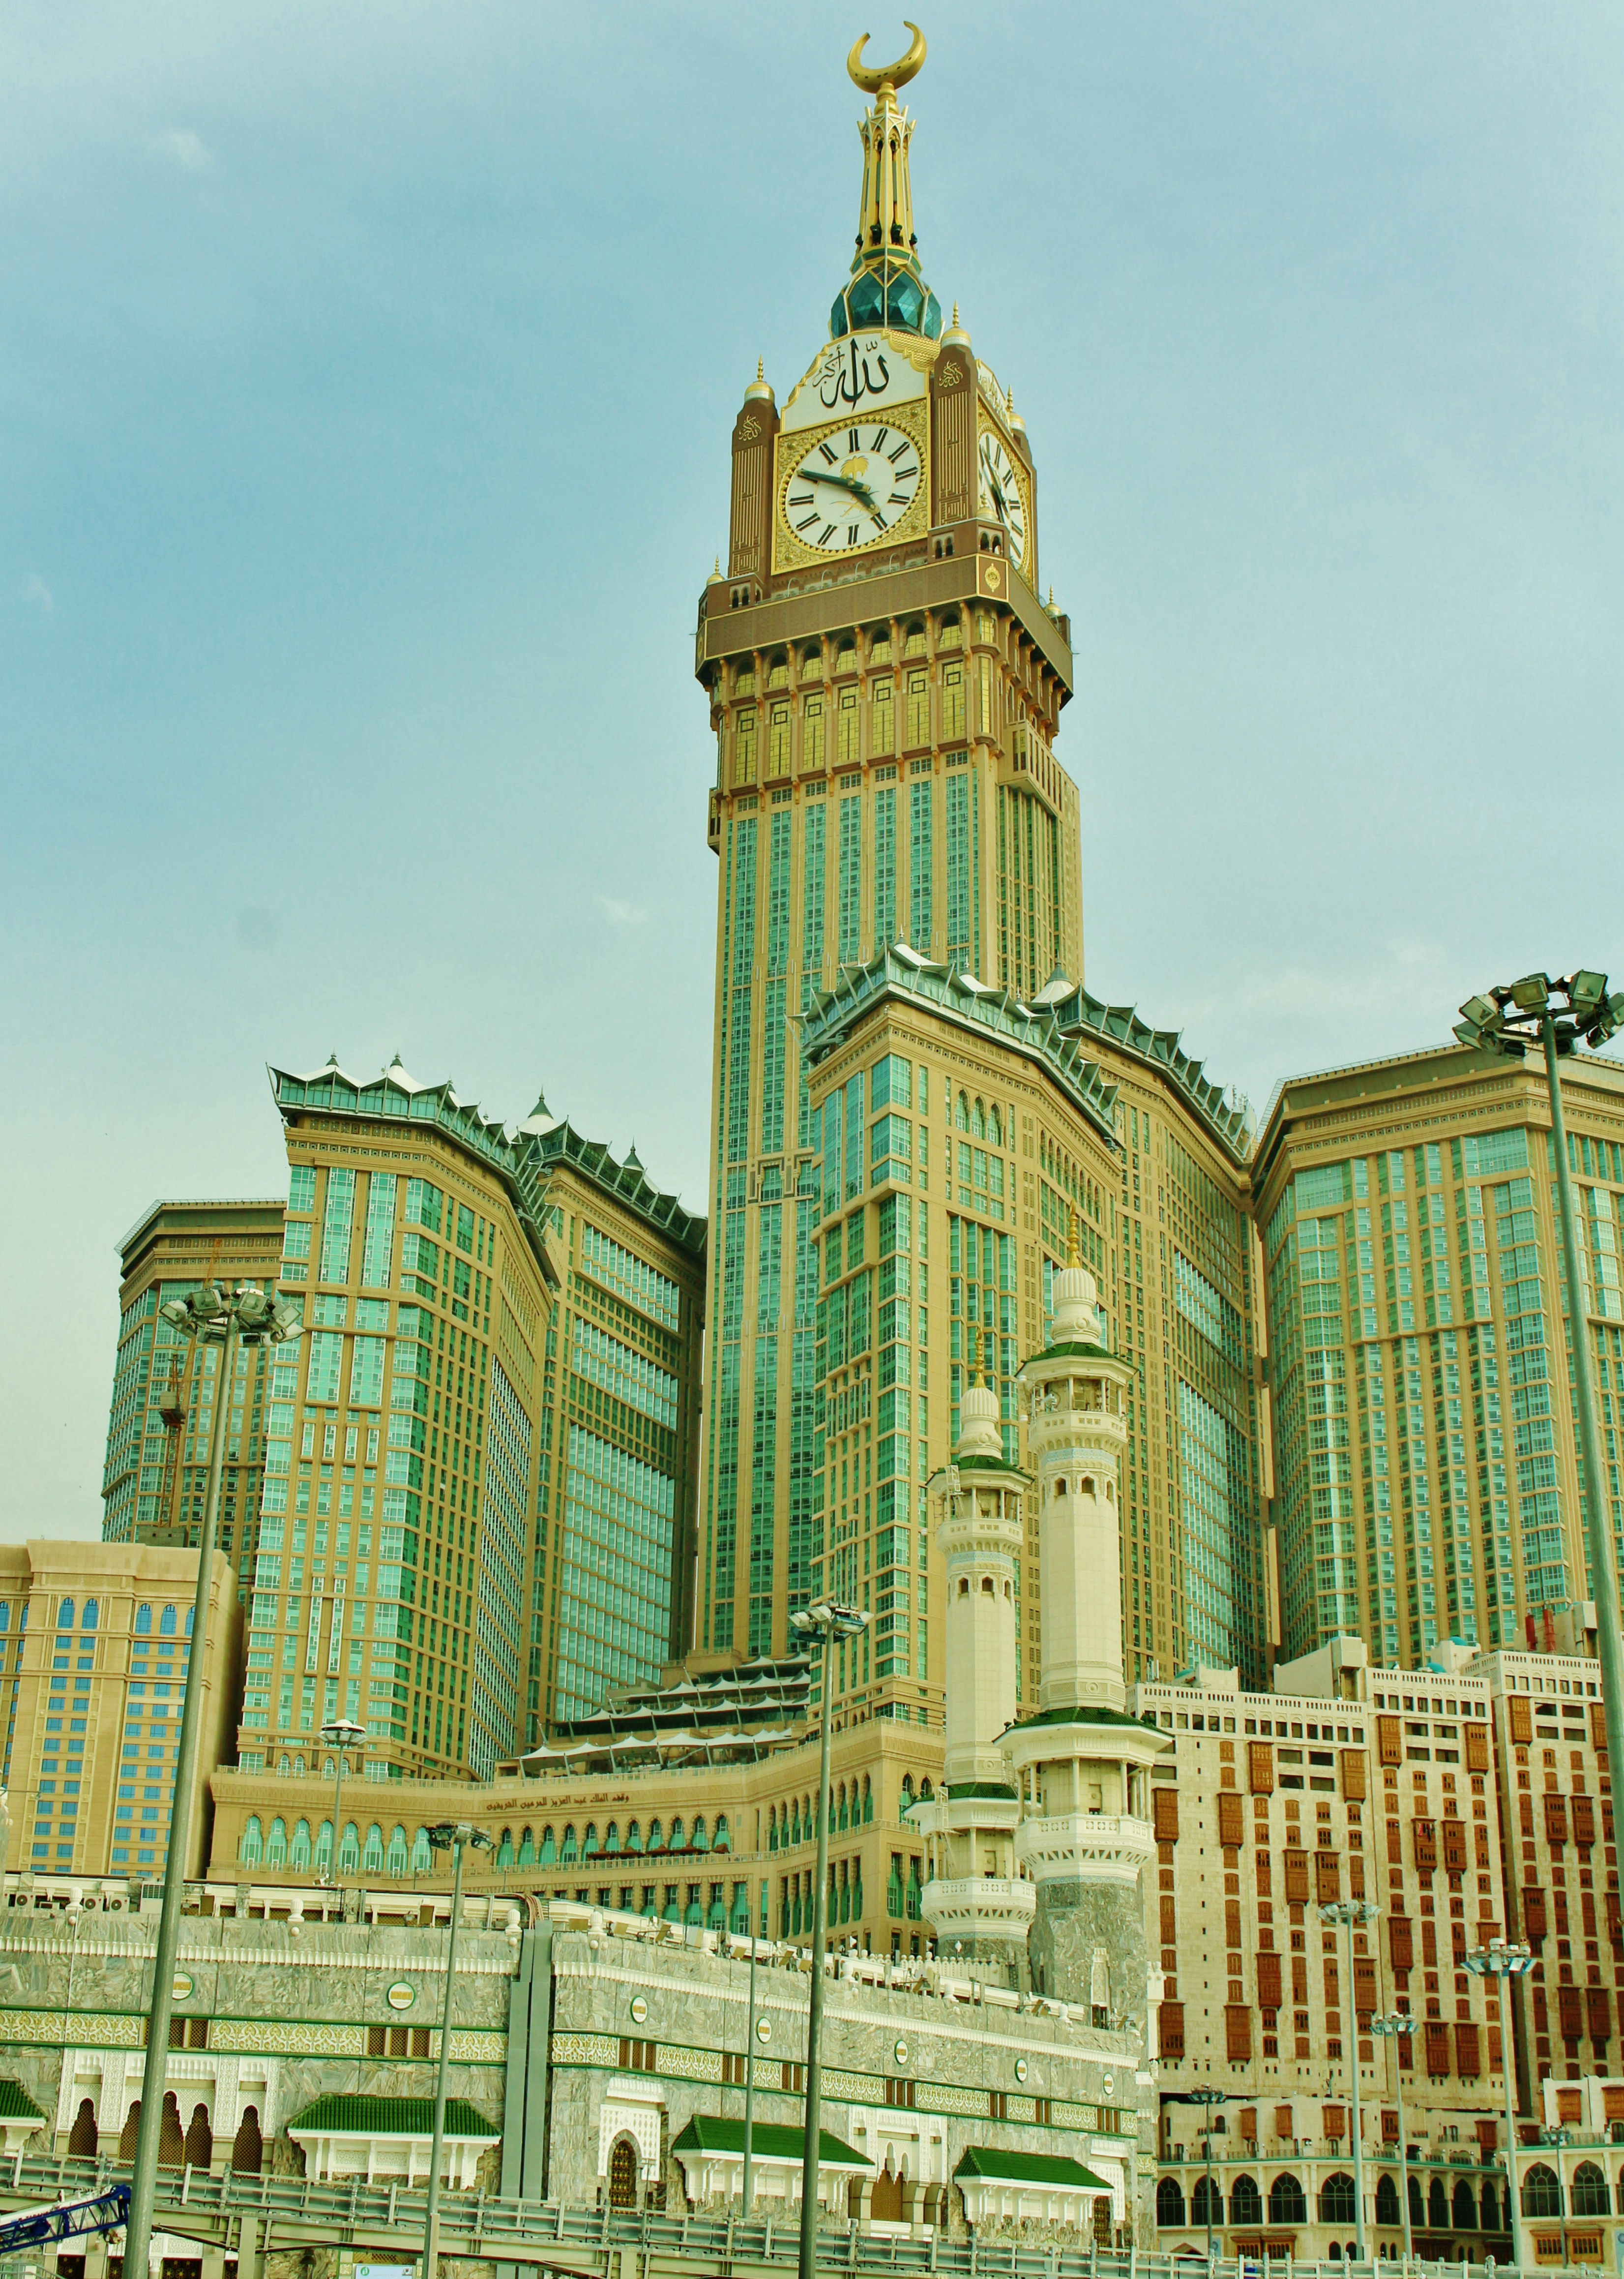 目前,麦加皇家钟楼饭店包揽了诸多的建筑物世界之最,在建筑界占据了